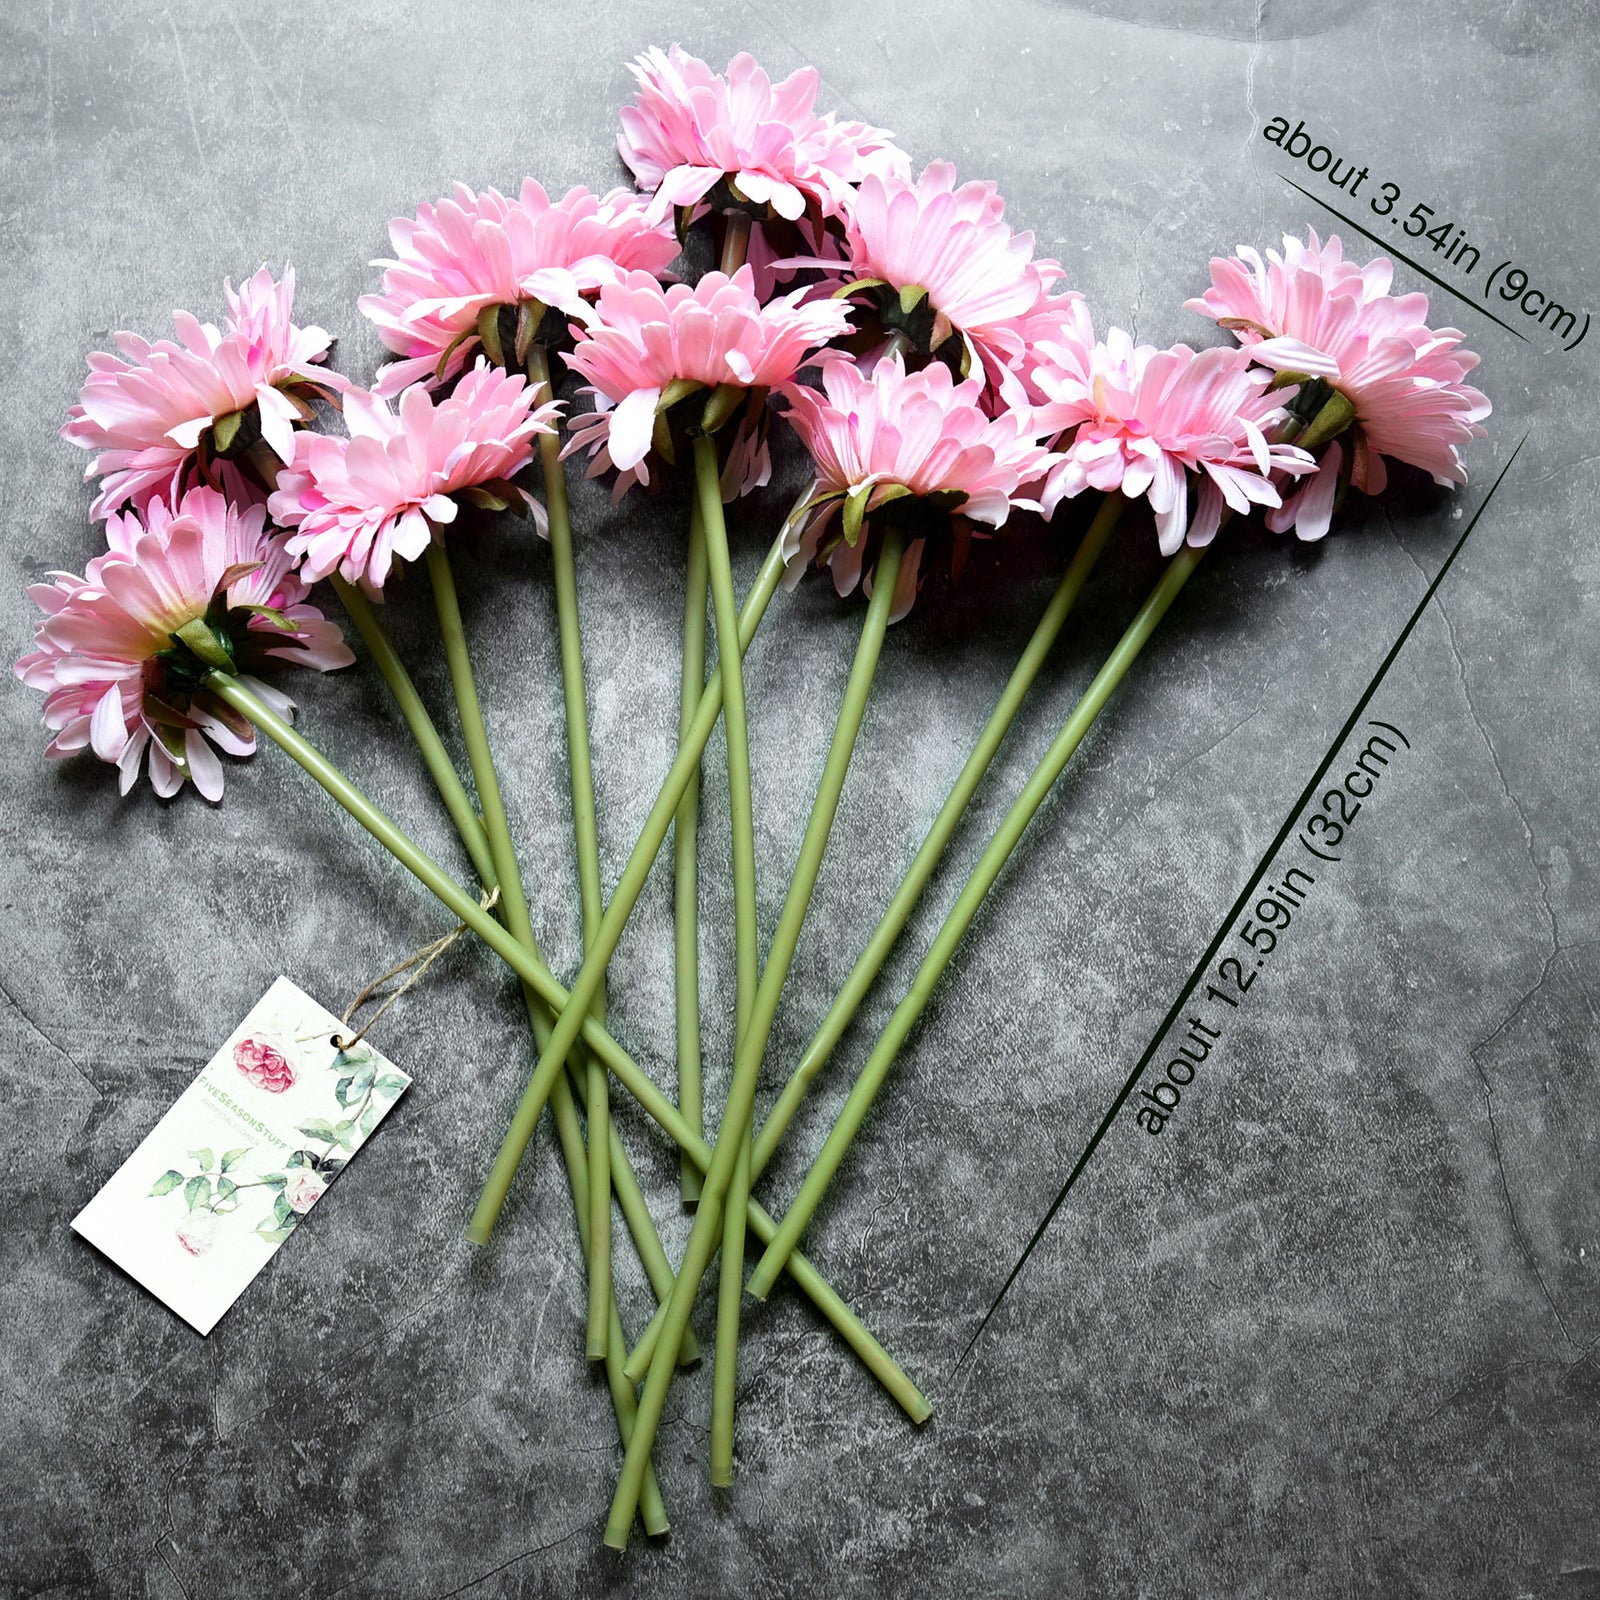 FiveSeasonStuff 10 Stems of Artificial Silk Gerbera Flowers & Bouquet, for Home Décor/DIY Flower Arrangement Decoration, 32cm (12.6 inches)